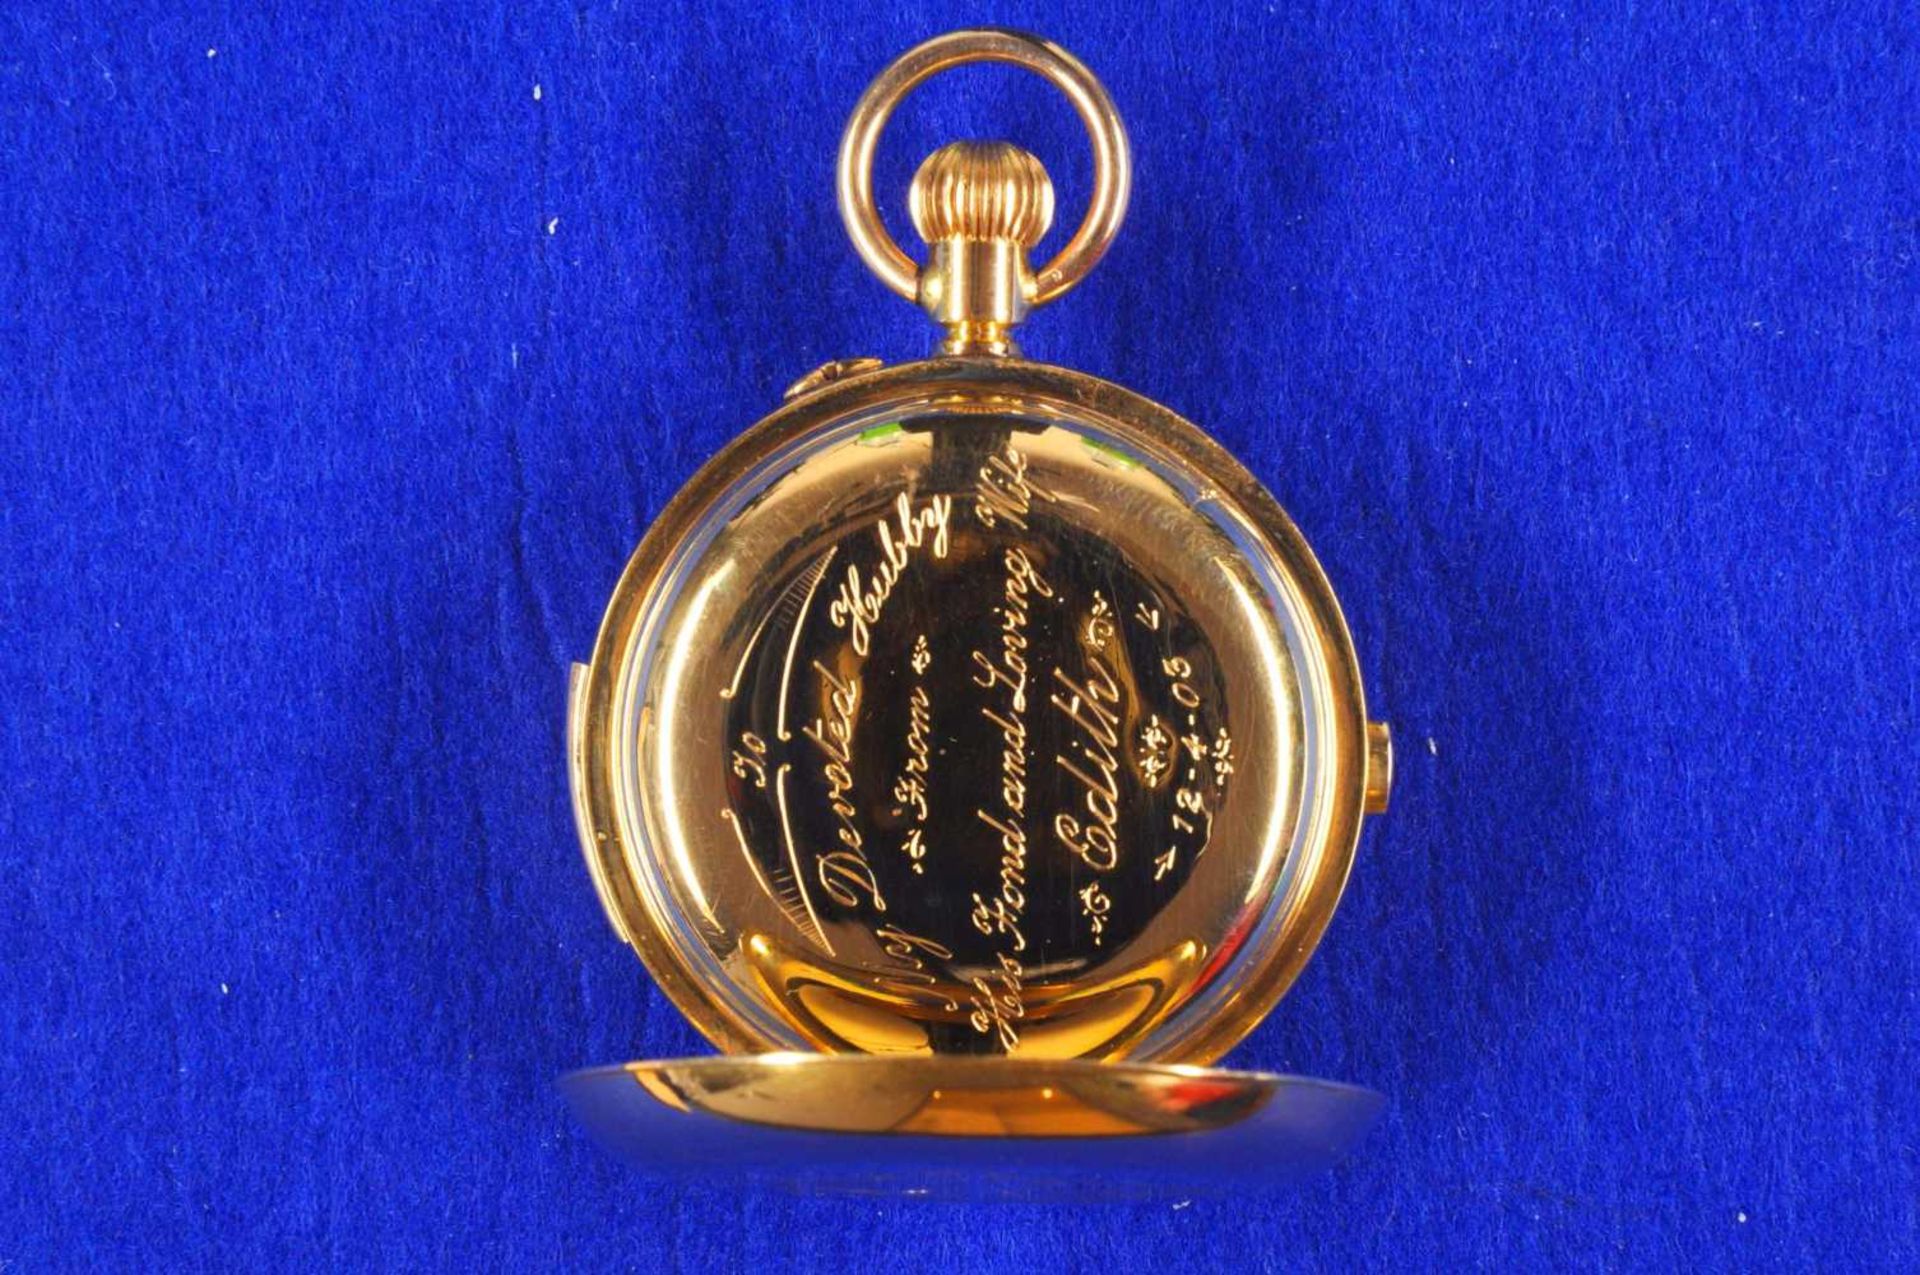 Grand Complication Chronograph Taschenuhr von etwa 1880. Ca. 55mm, 750er Rotgold, Handaufzug. Emaill - Bild 2 aus 4